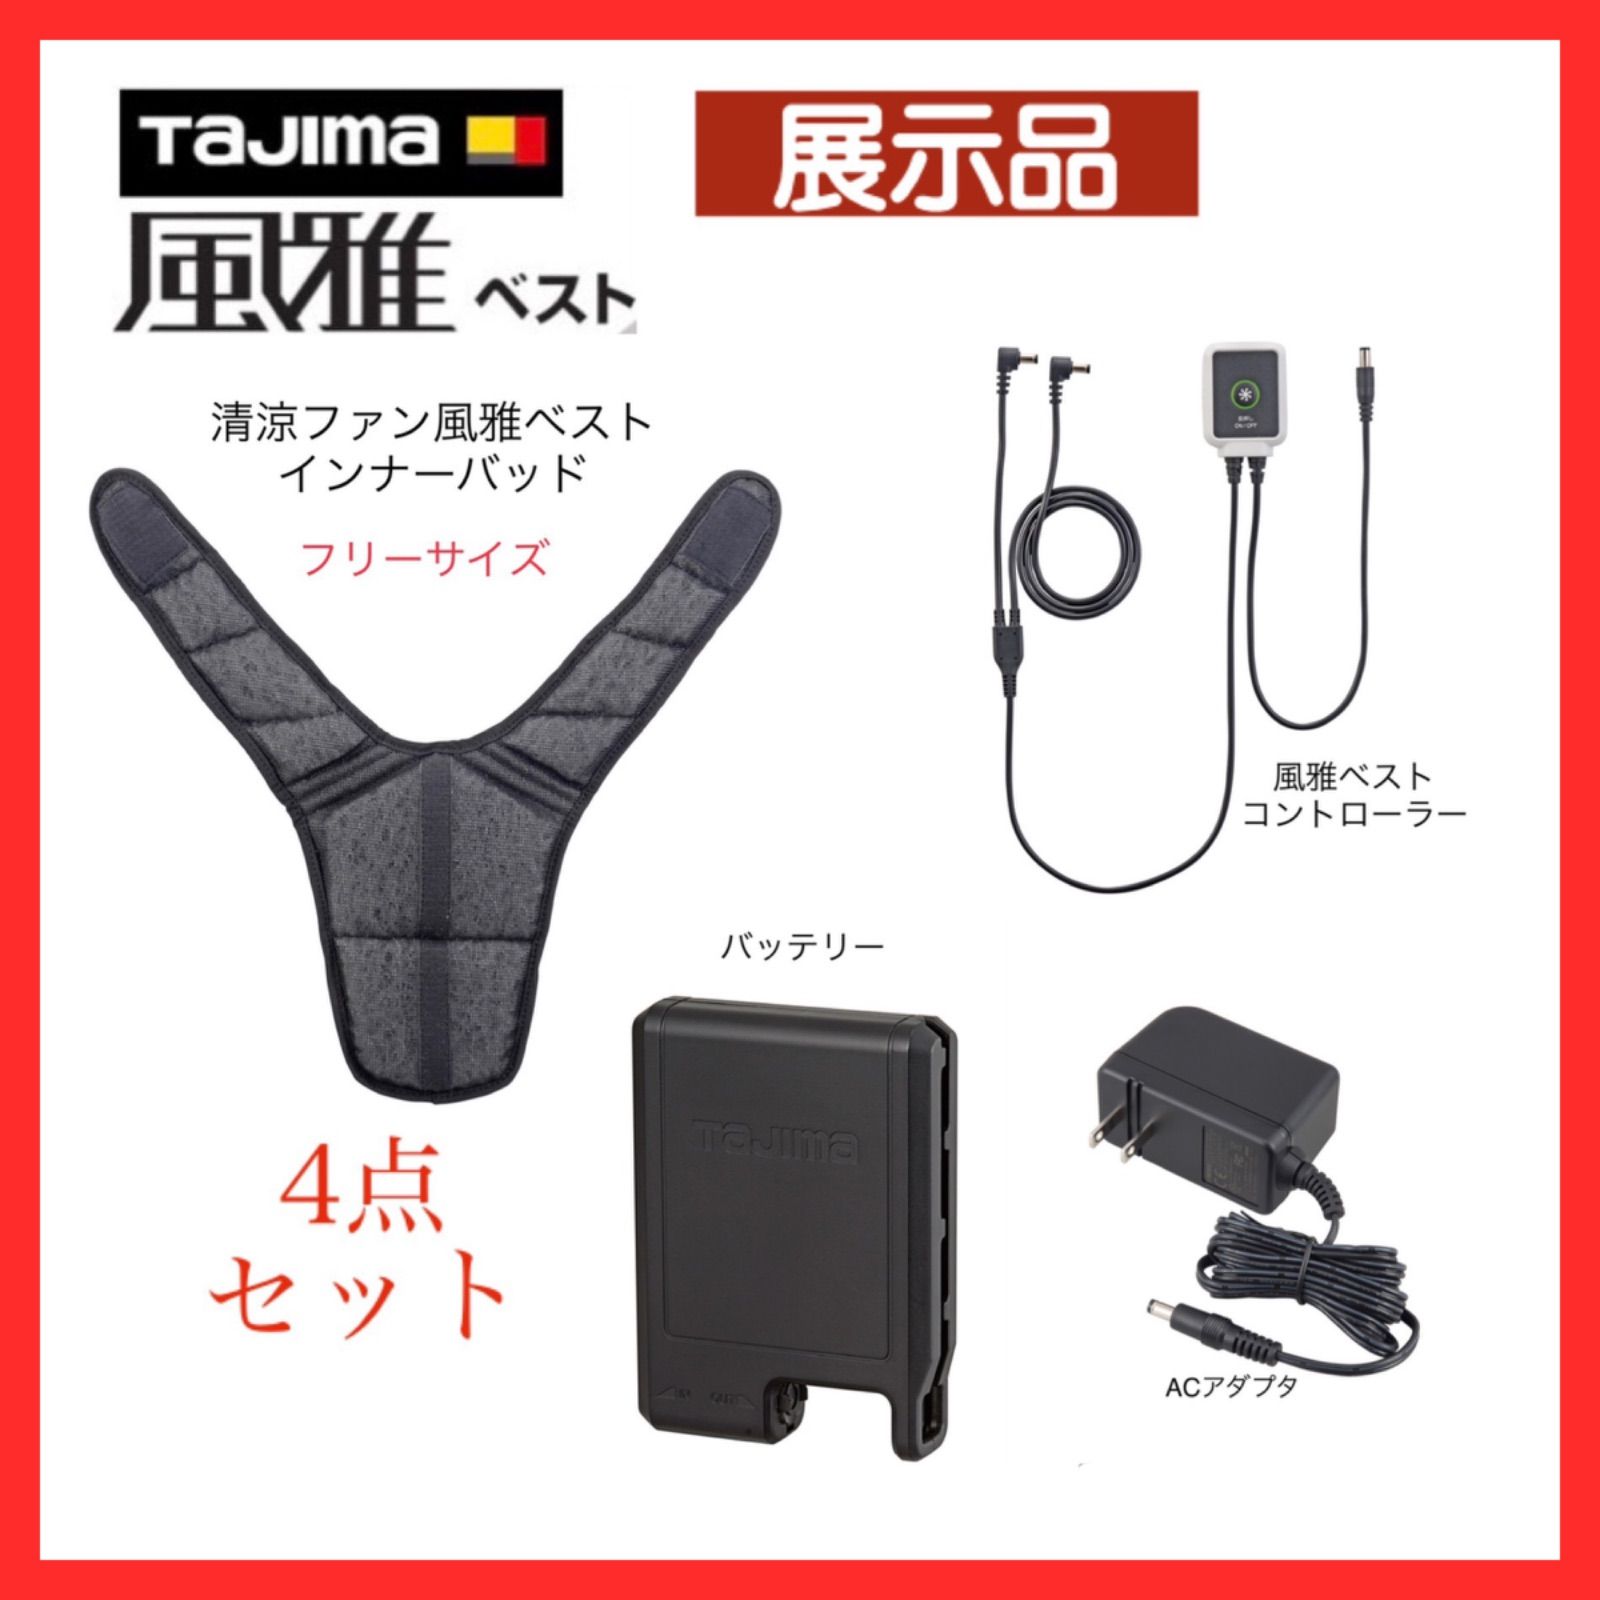 永遠の定番モデル タジマ Tajima 清涼ファン風雅ベスト インナーパッド FVP-AAPG